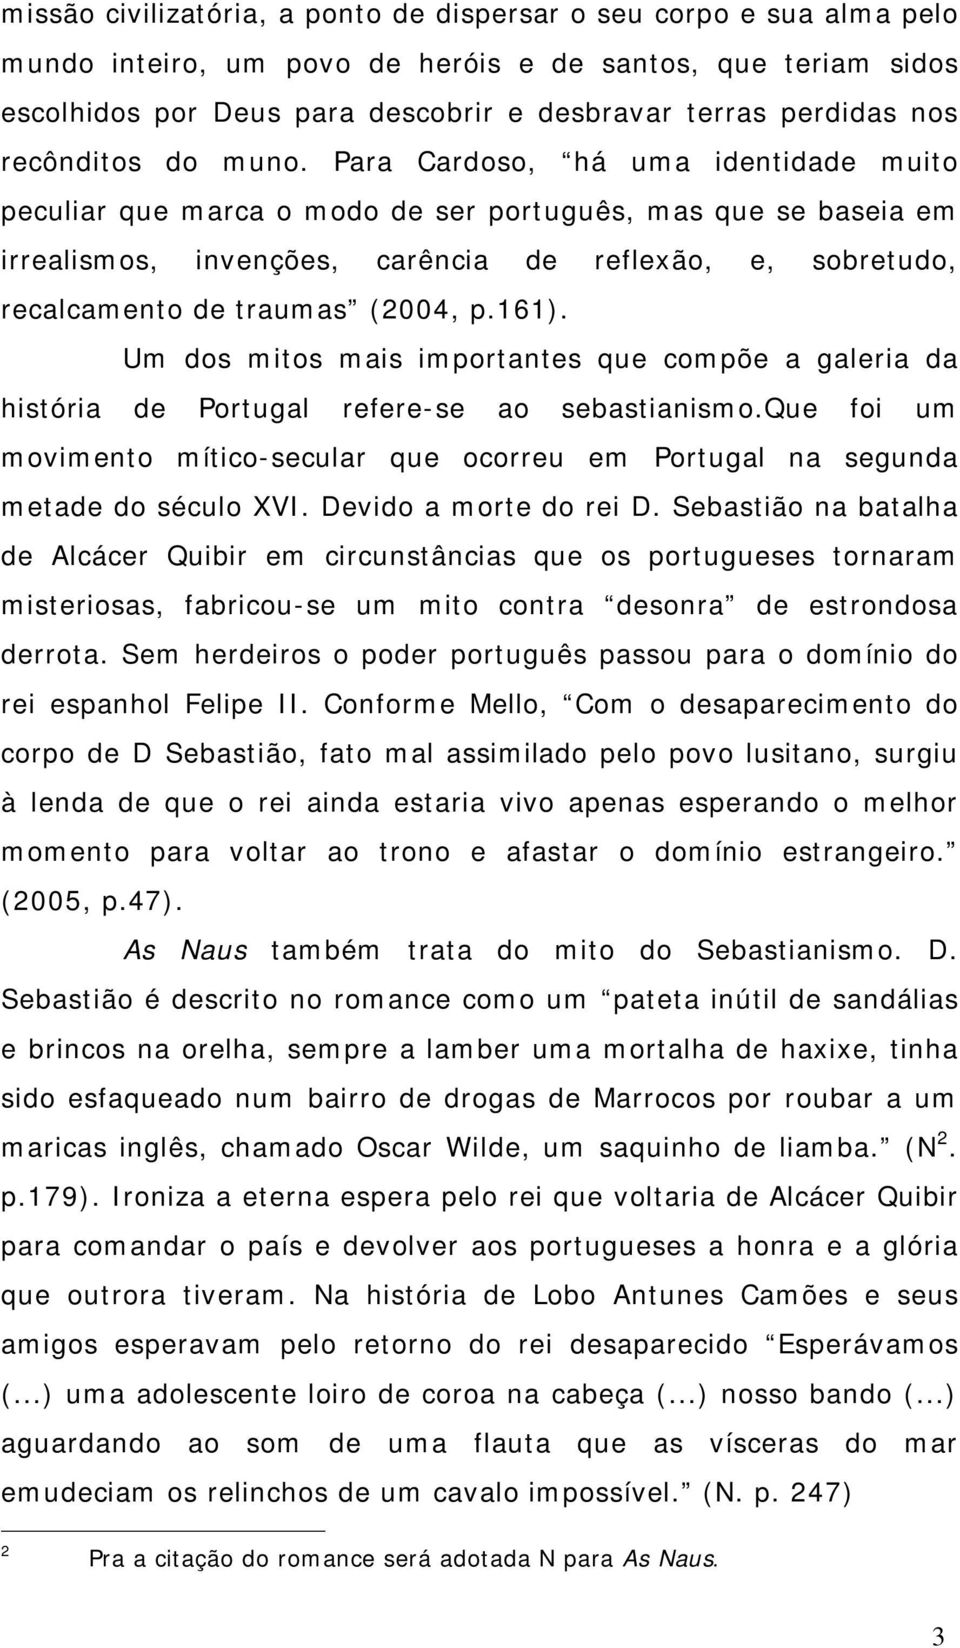 Para Cardoso, há uma identidade muito peculiar que marca o modo de ser português, mas que se baseia em irrealismos, invenções, carência de reflexão, e, sobretudo, recalcamento de traumas (2004, p.